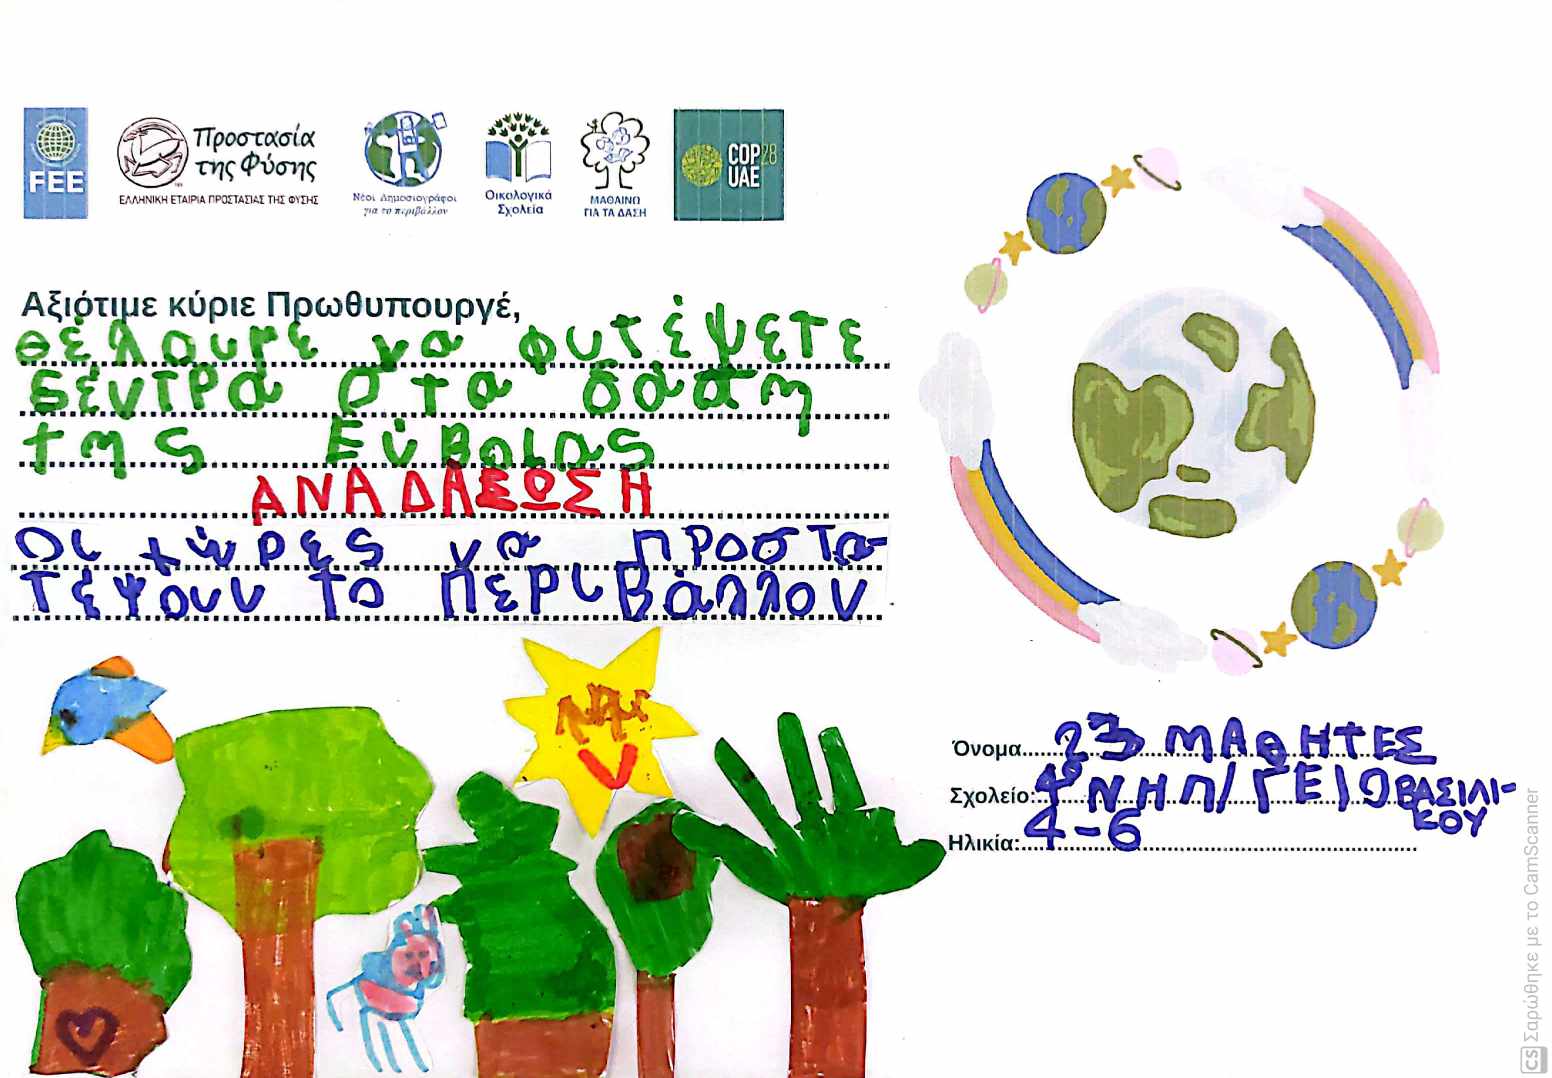 Μητσοτάκης: Τα μηνύματα που του έστειλαν παιδιά απ’ όλη την Ελλάδα για την κλιματική κρίση και το περιβάλλον